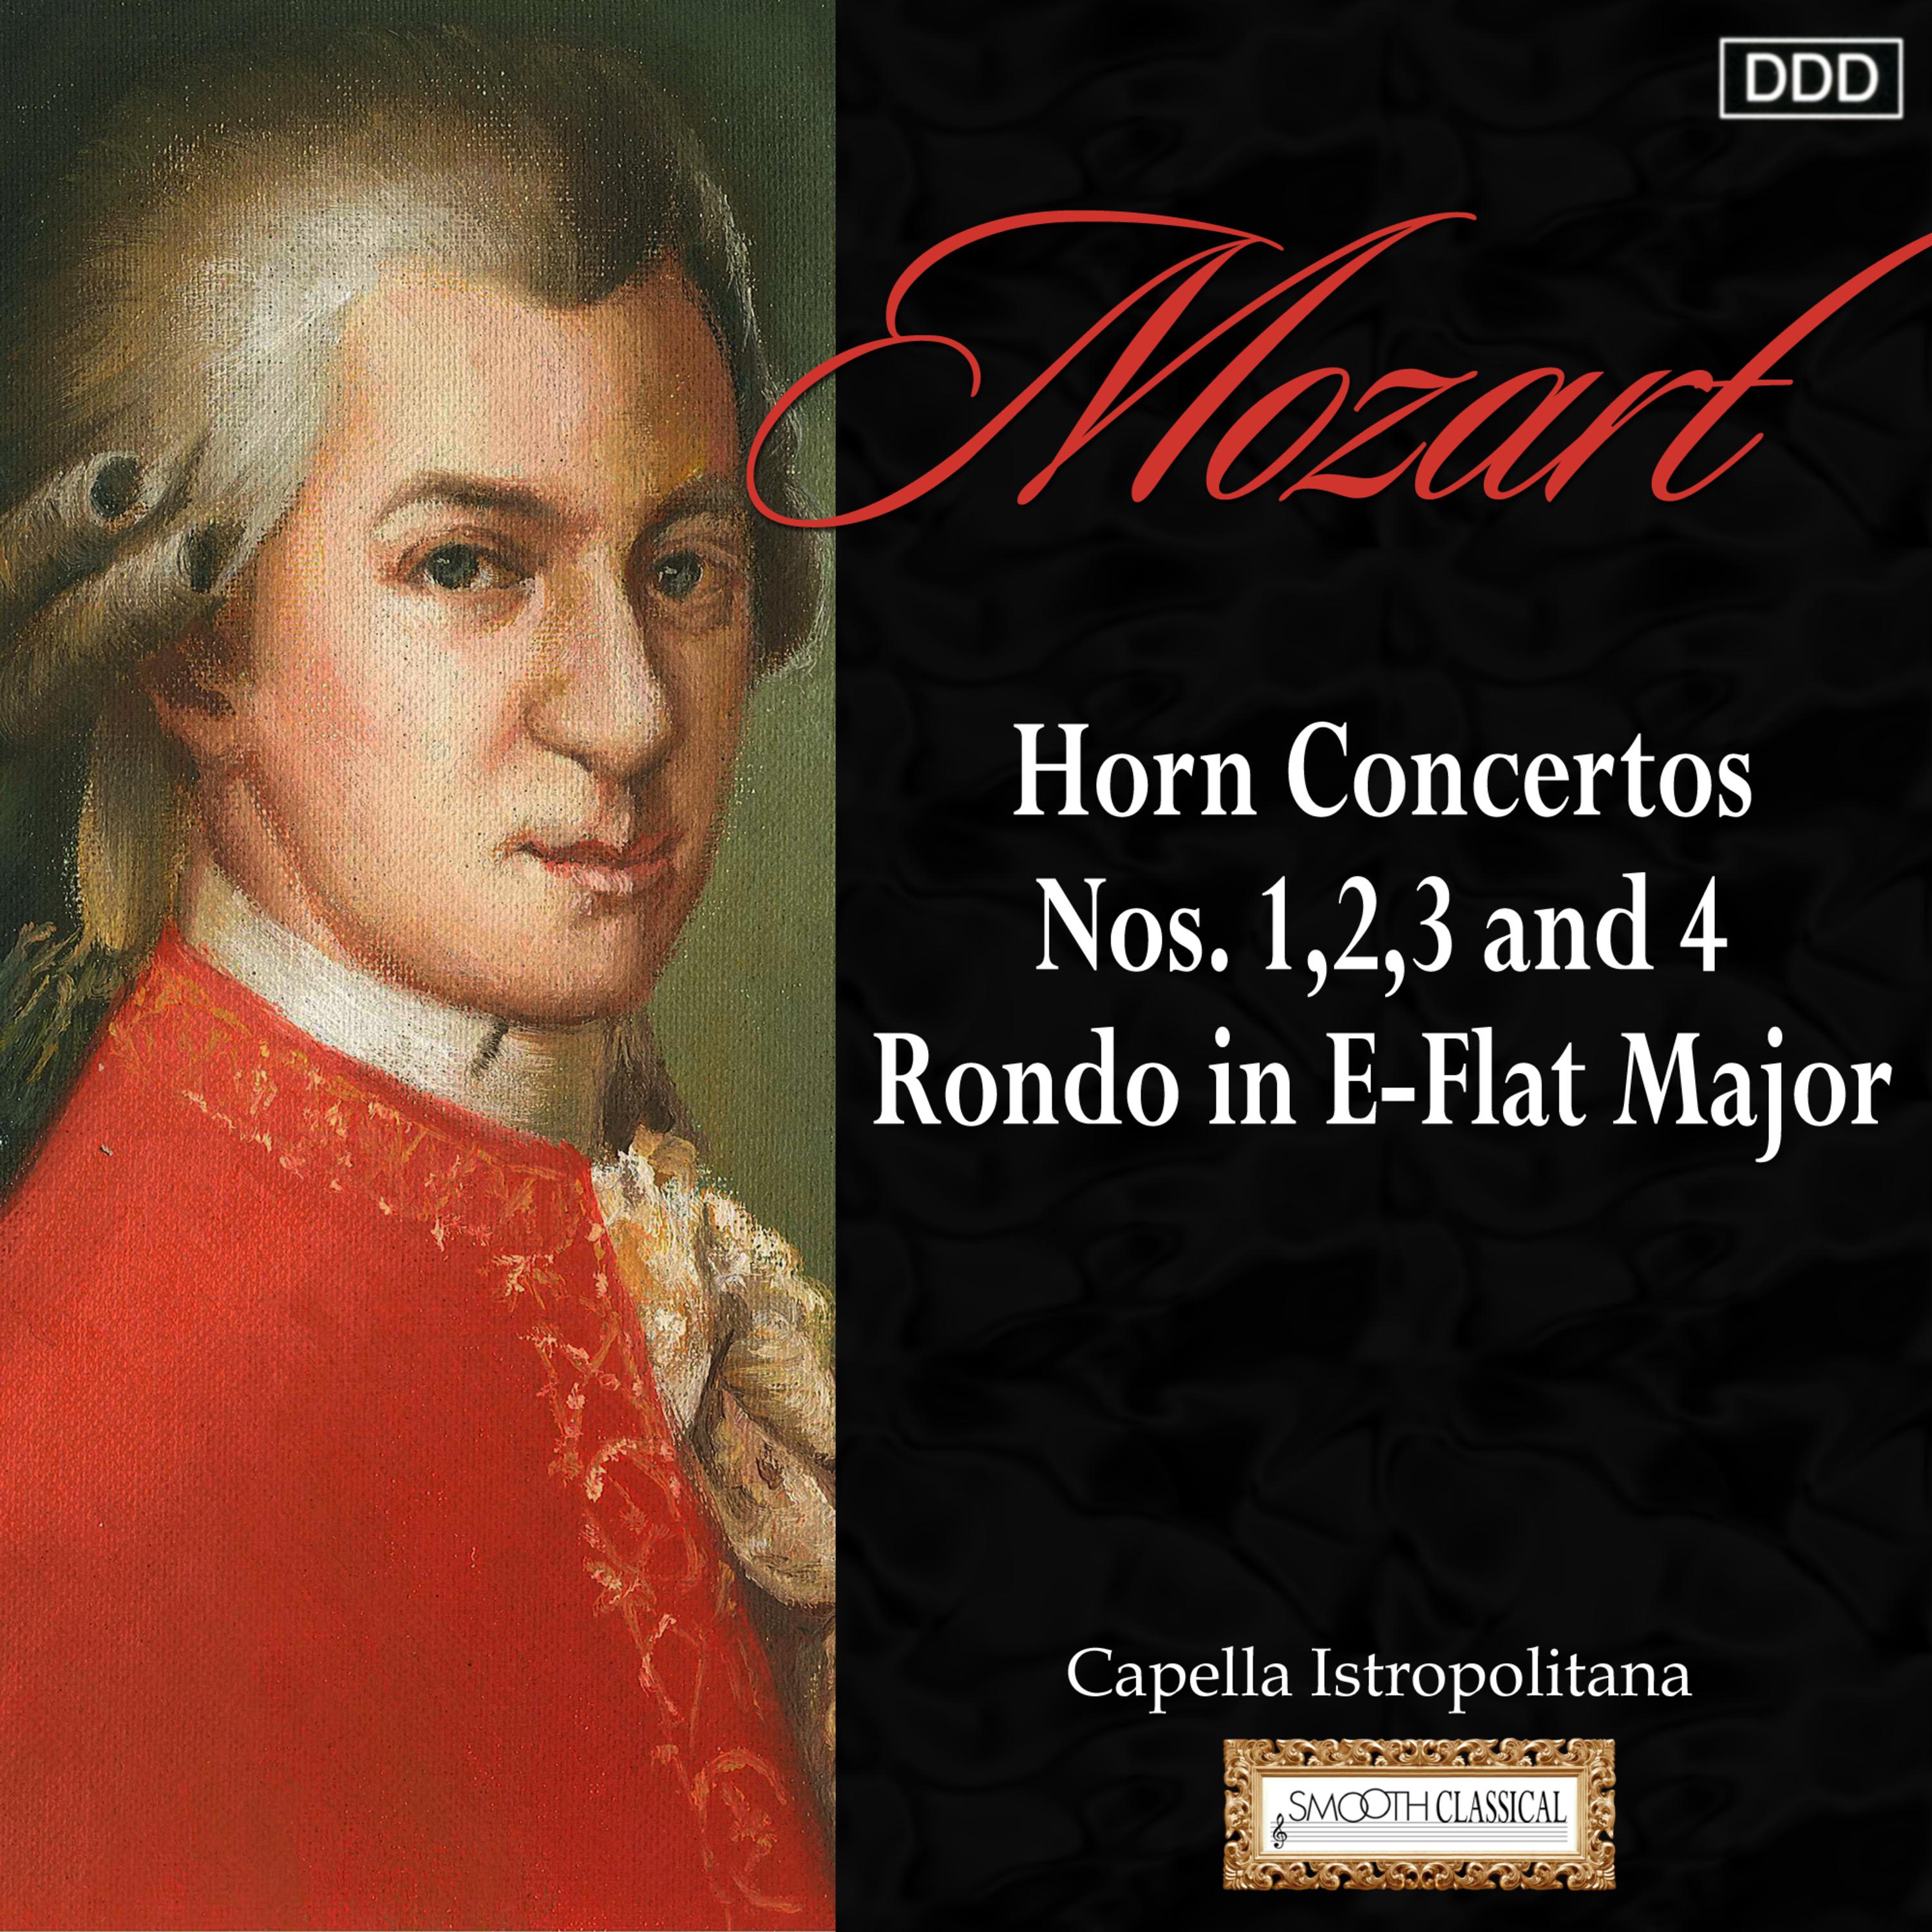 Mozart: Horn Concertos Nos. 1,2, 3 and 4 - Rondo in E-Flat Major